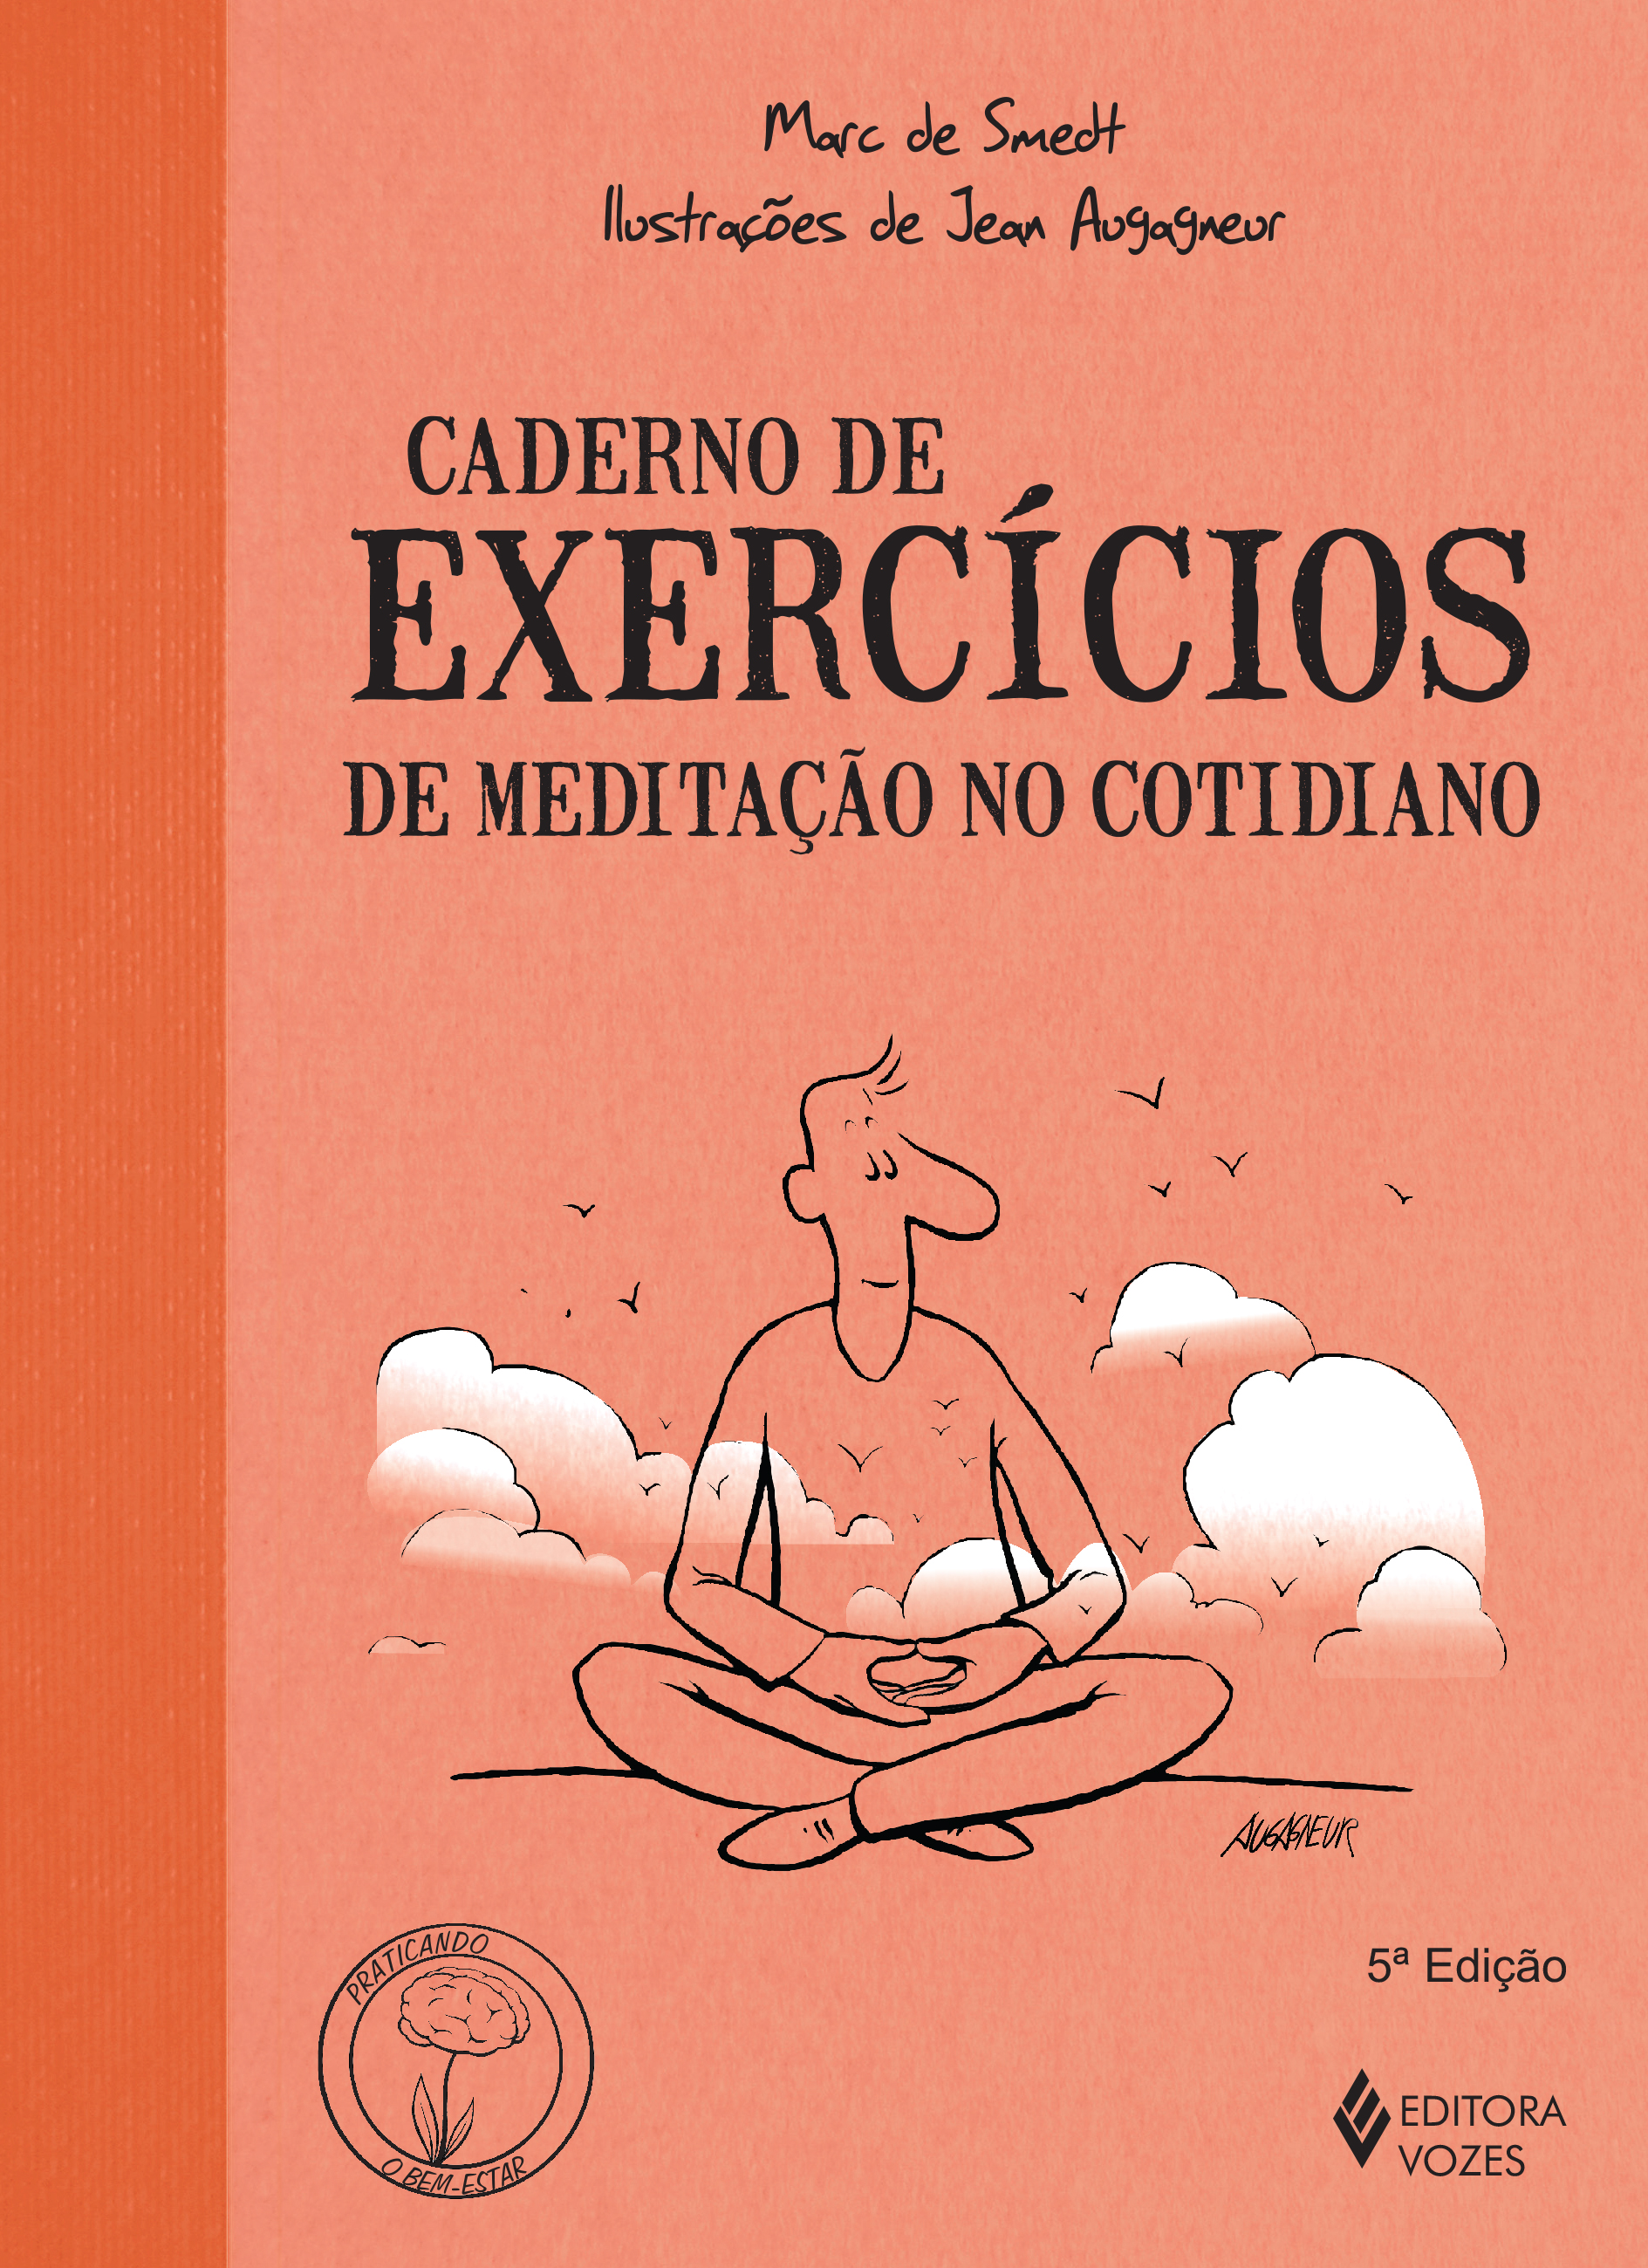 Caderno de Execícios - De Meditação no Cotidiano